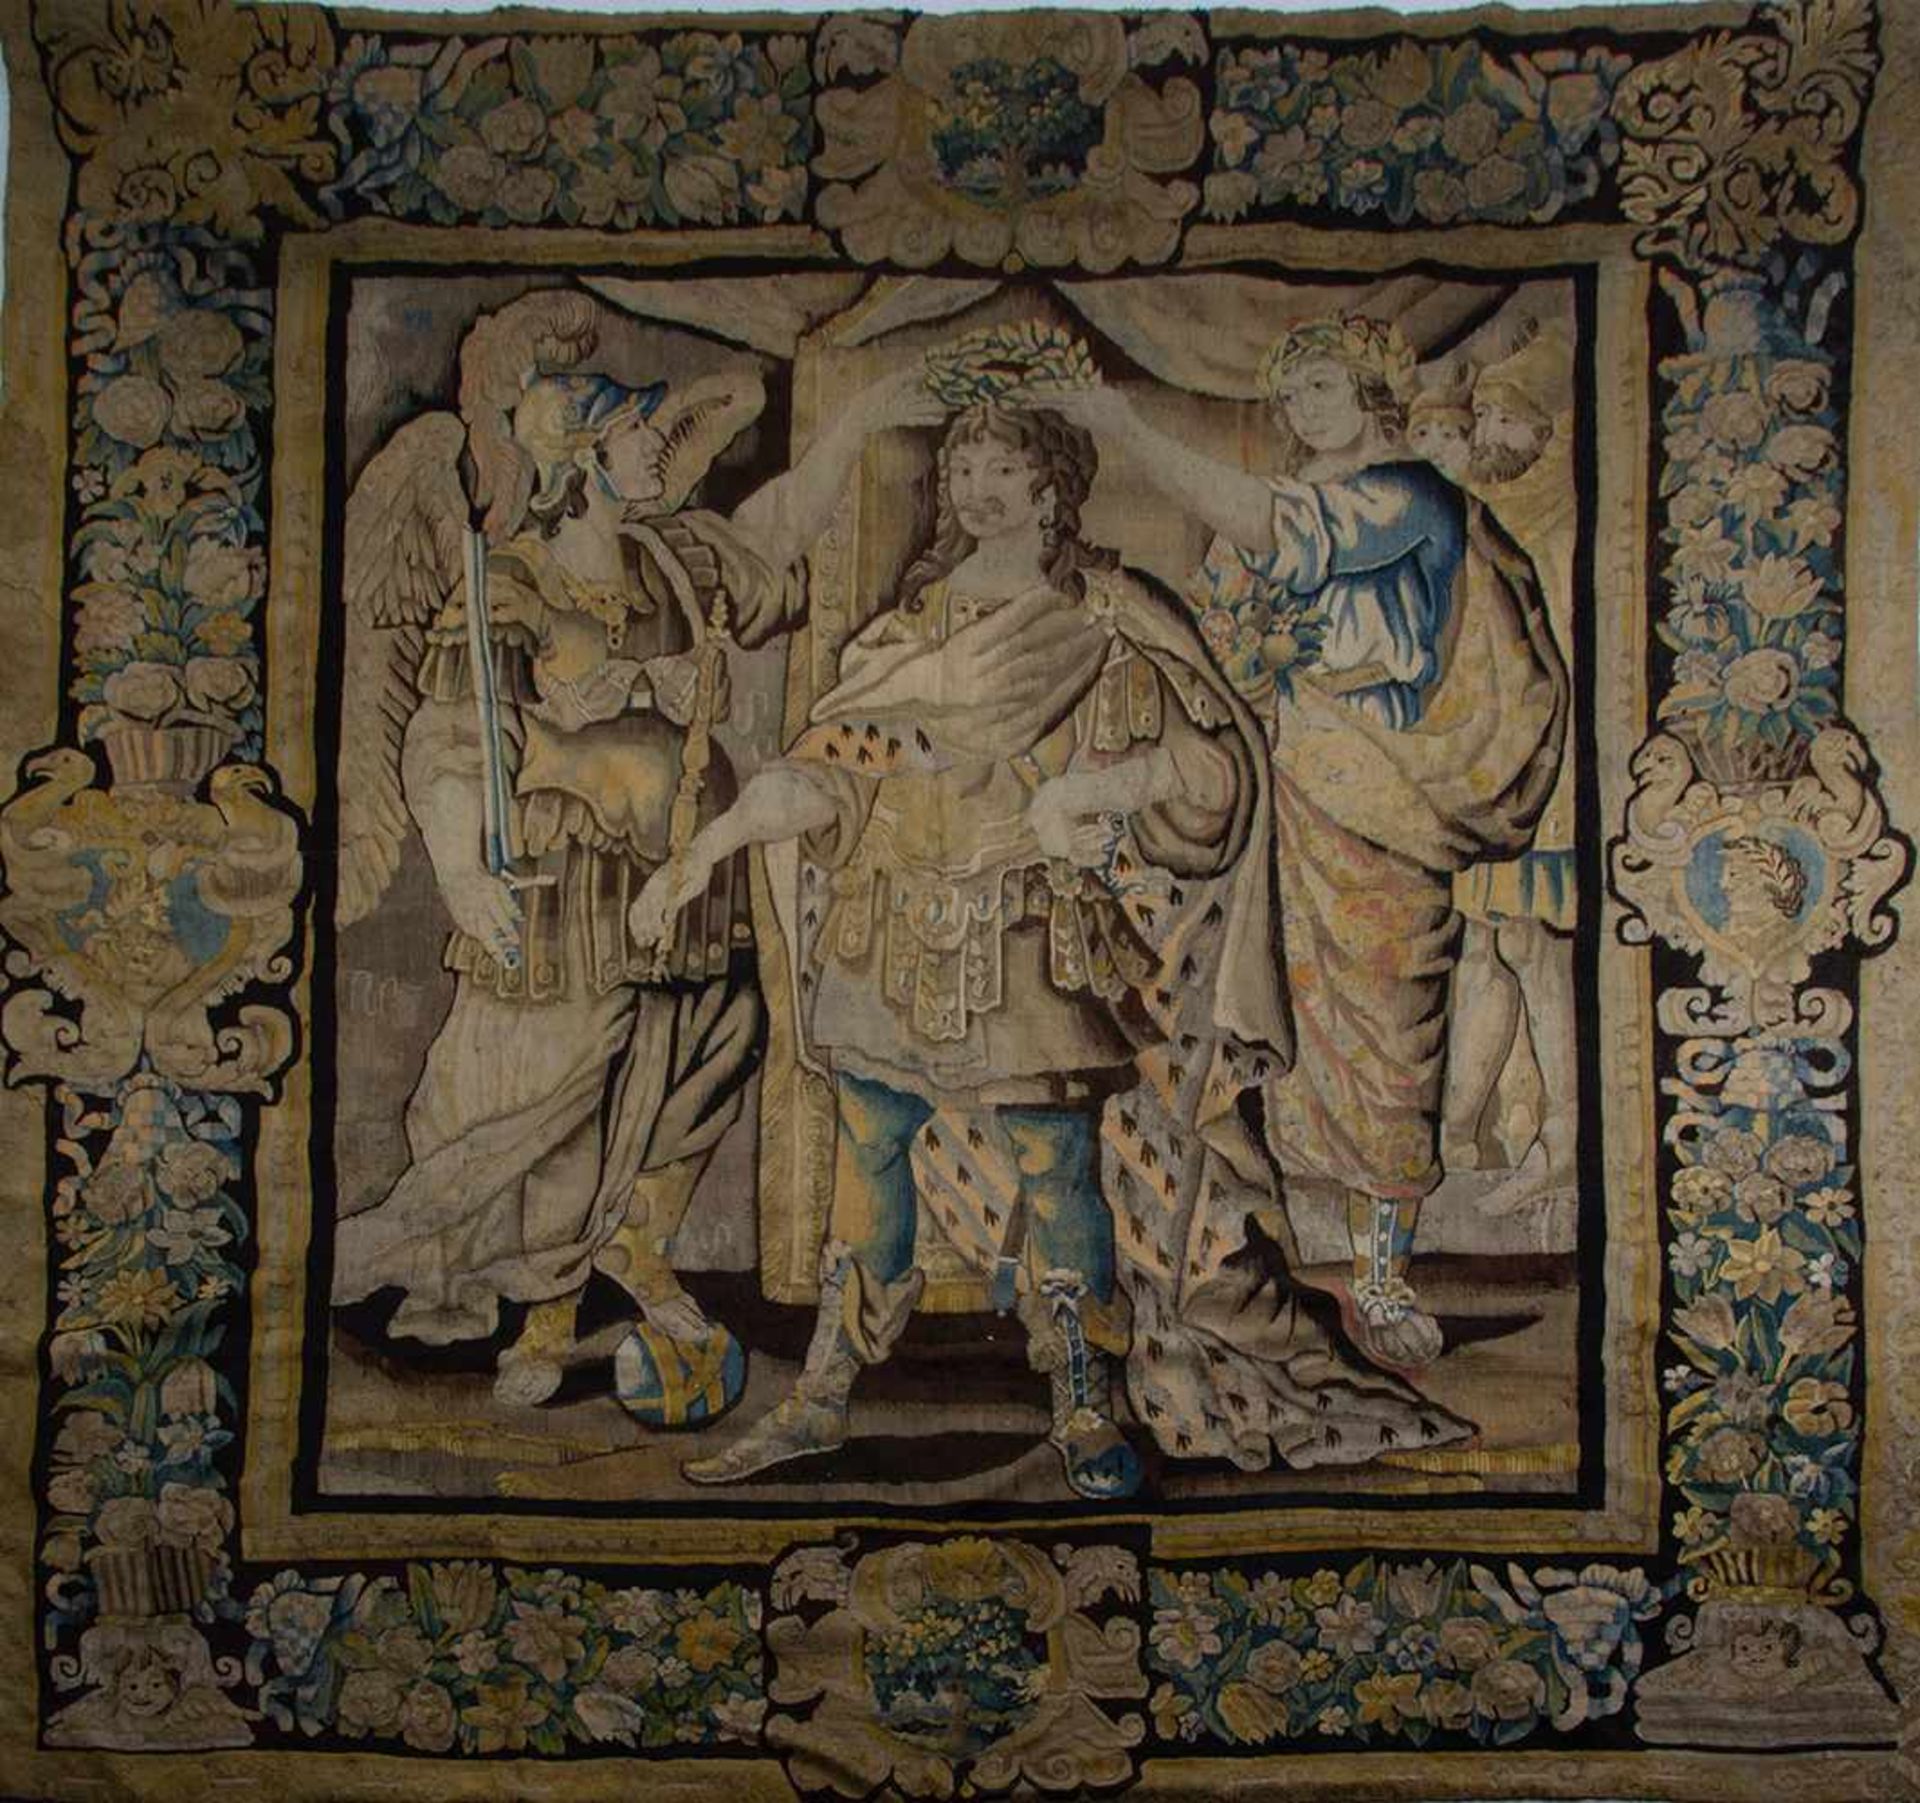 "Coronación del Rey Luis XIV". Tapiz de la manufactura de los Gobelinos en lana."Coronación d